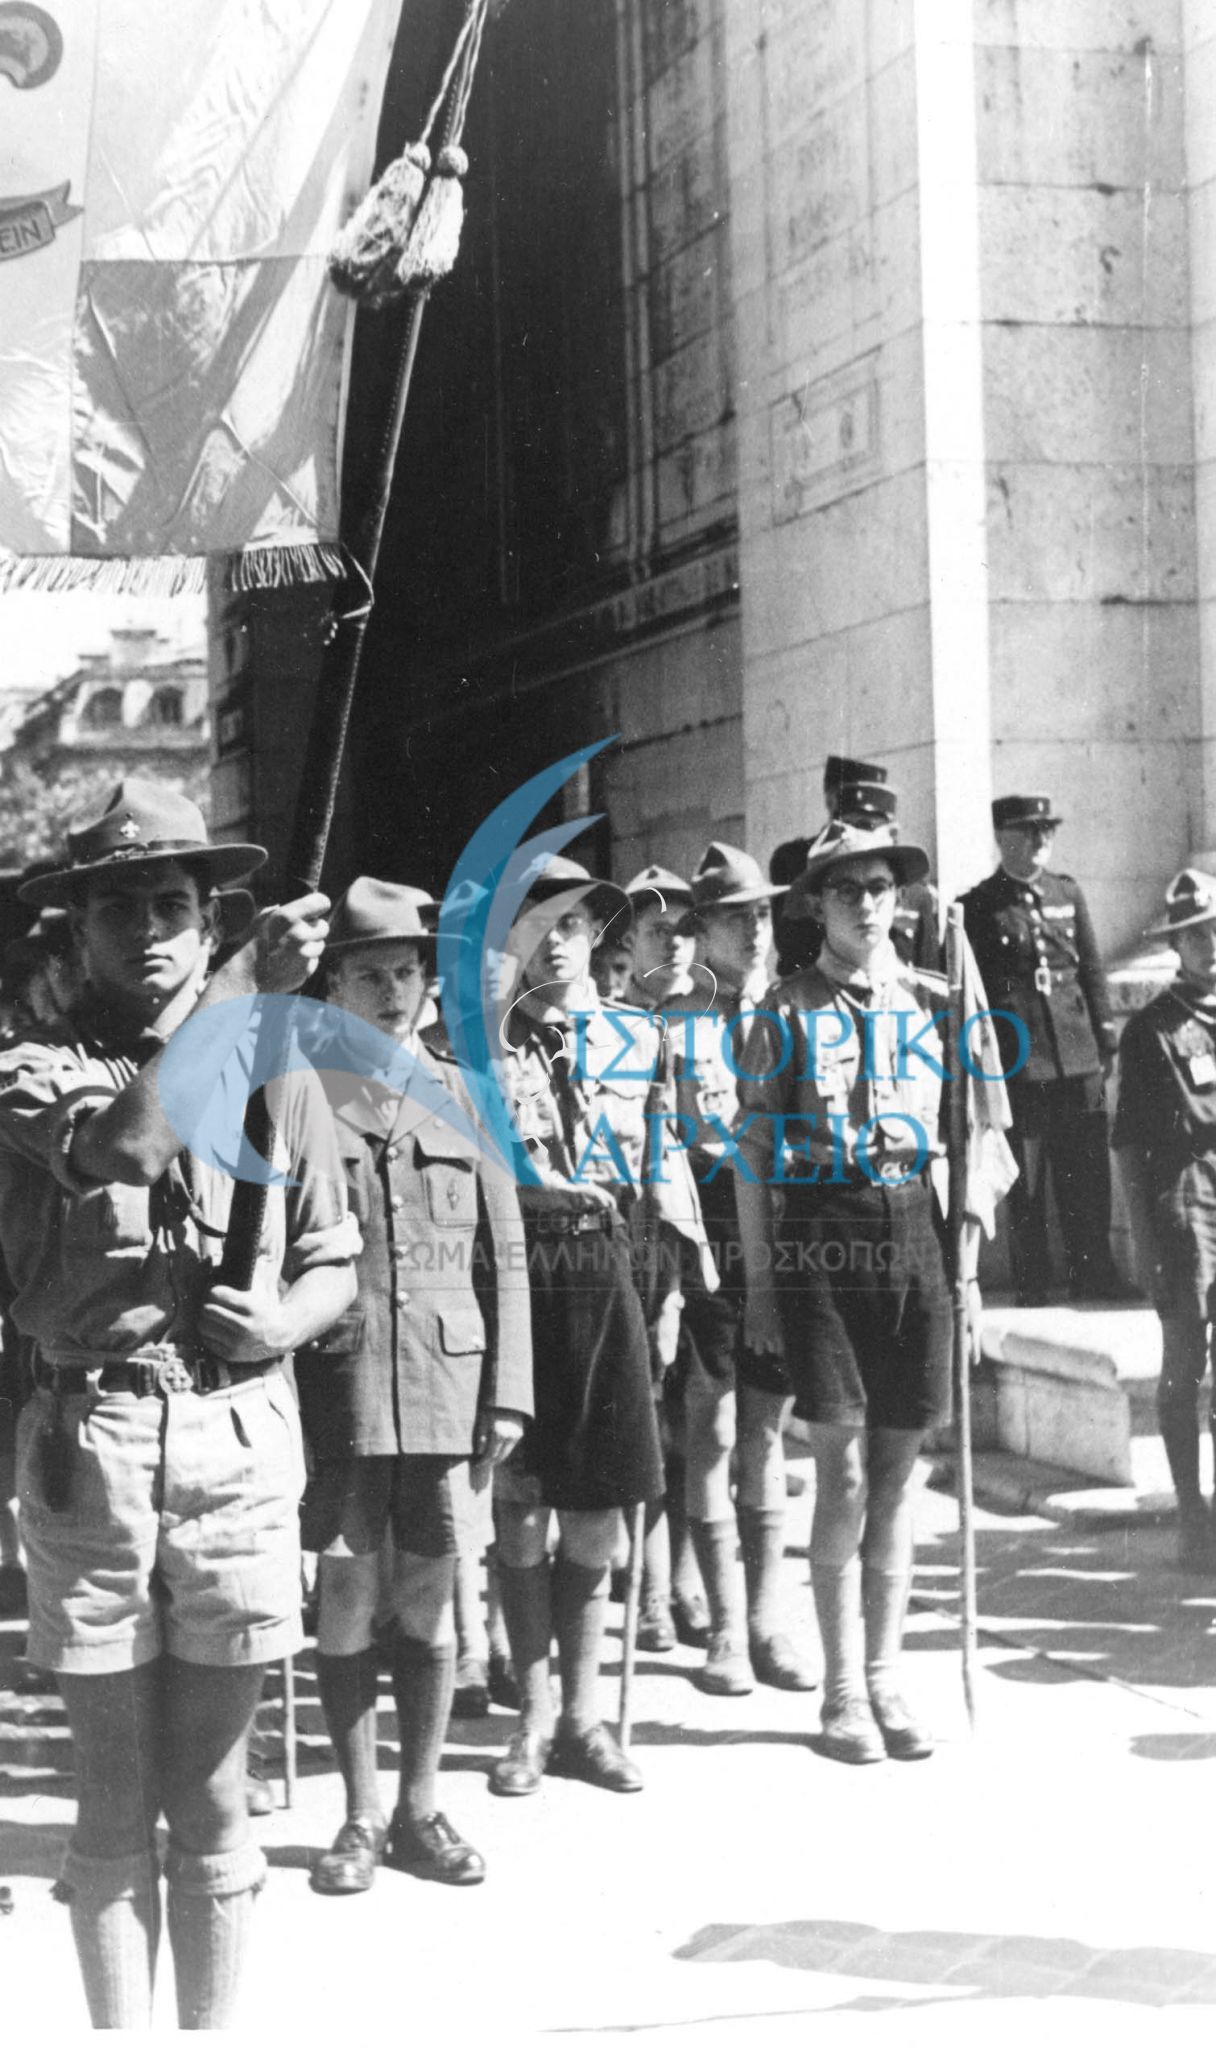 Η ελληνική προσκοπική αποστολή του Τζάμπορη 1947 στο Μνημείο Αγνώστου Στρατιώτη των Παρισίων.